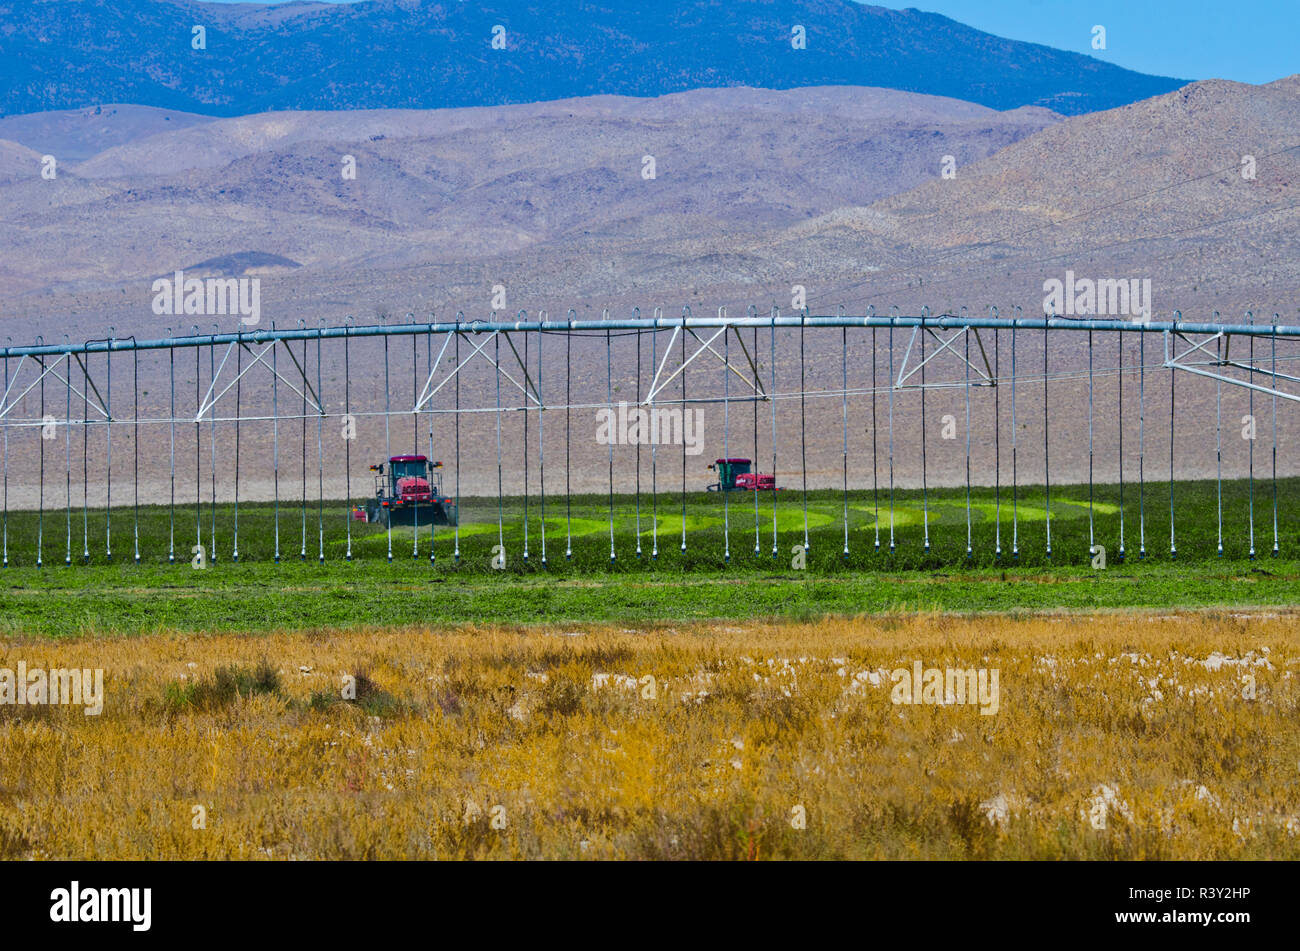 USA, Nevada, Lida. Ranch, moment de la récolte, le système d'irrigation à pivot central Banque D'Images